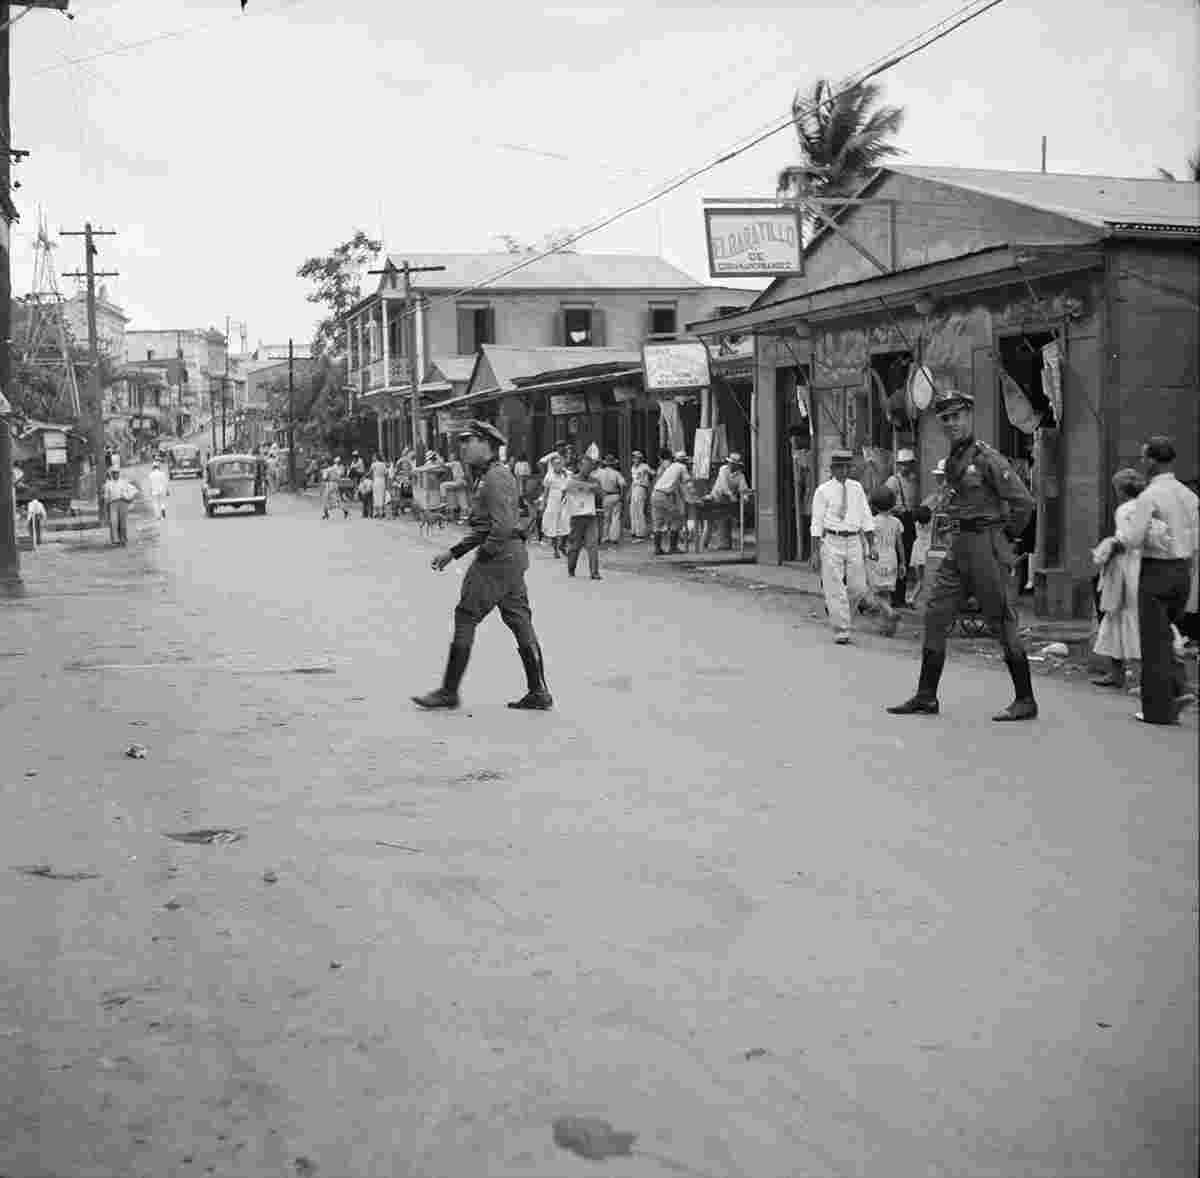 San Juan. Insular police on a San Juan street, 1938